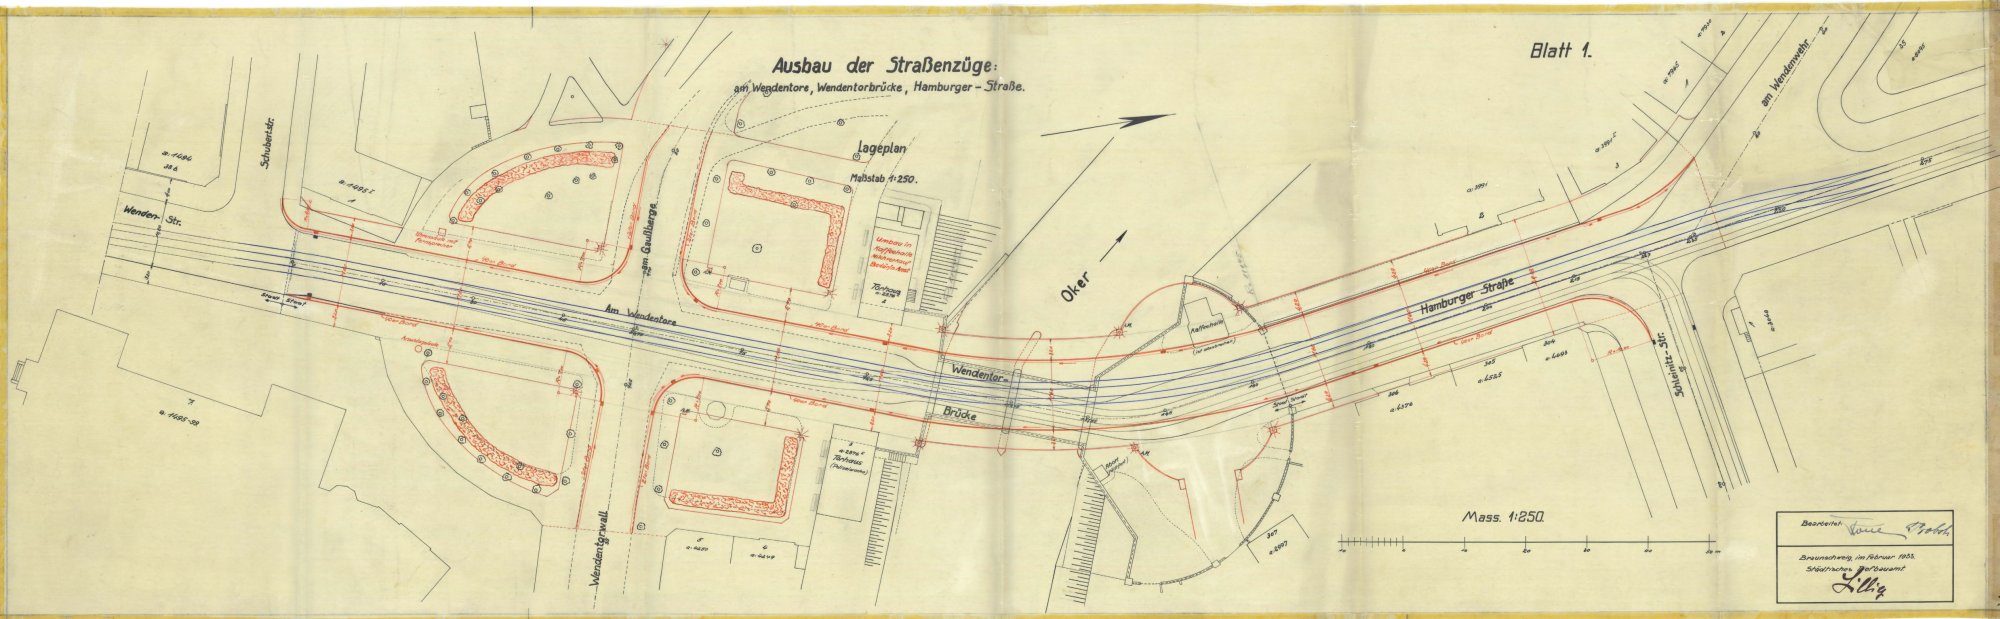 Wendentorbrücke, Lageplan, Ausschnitt, 1933